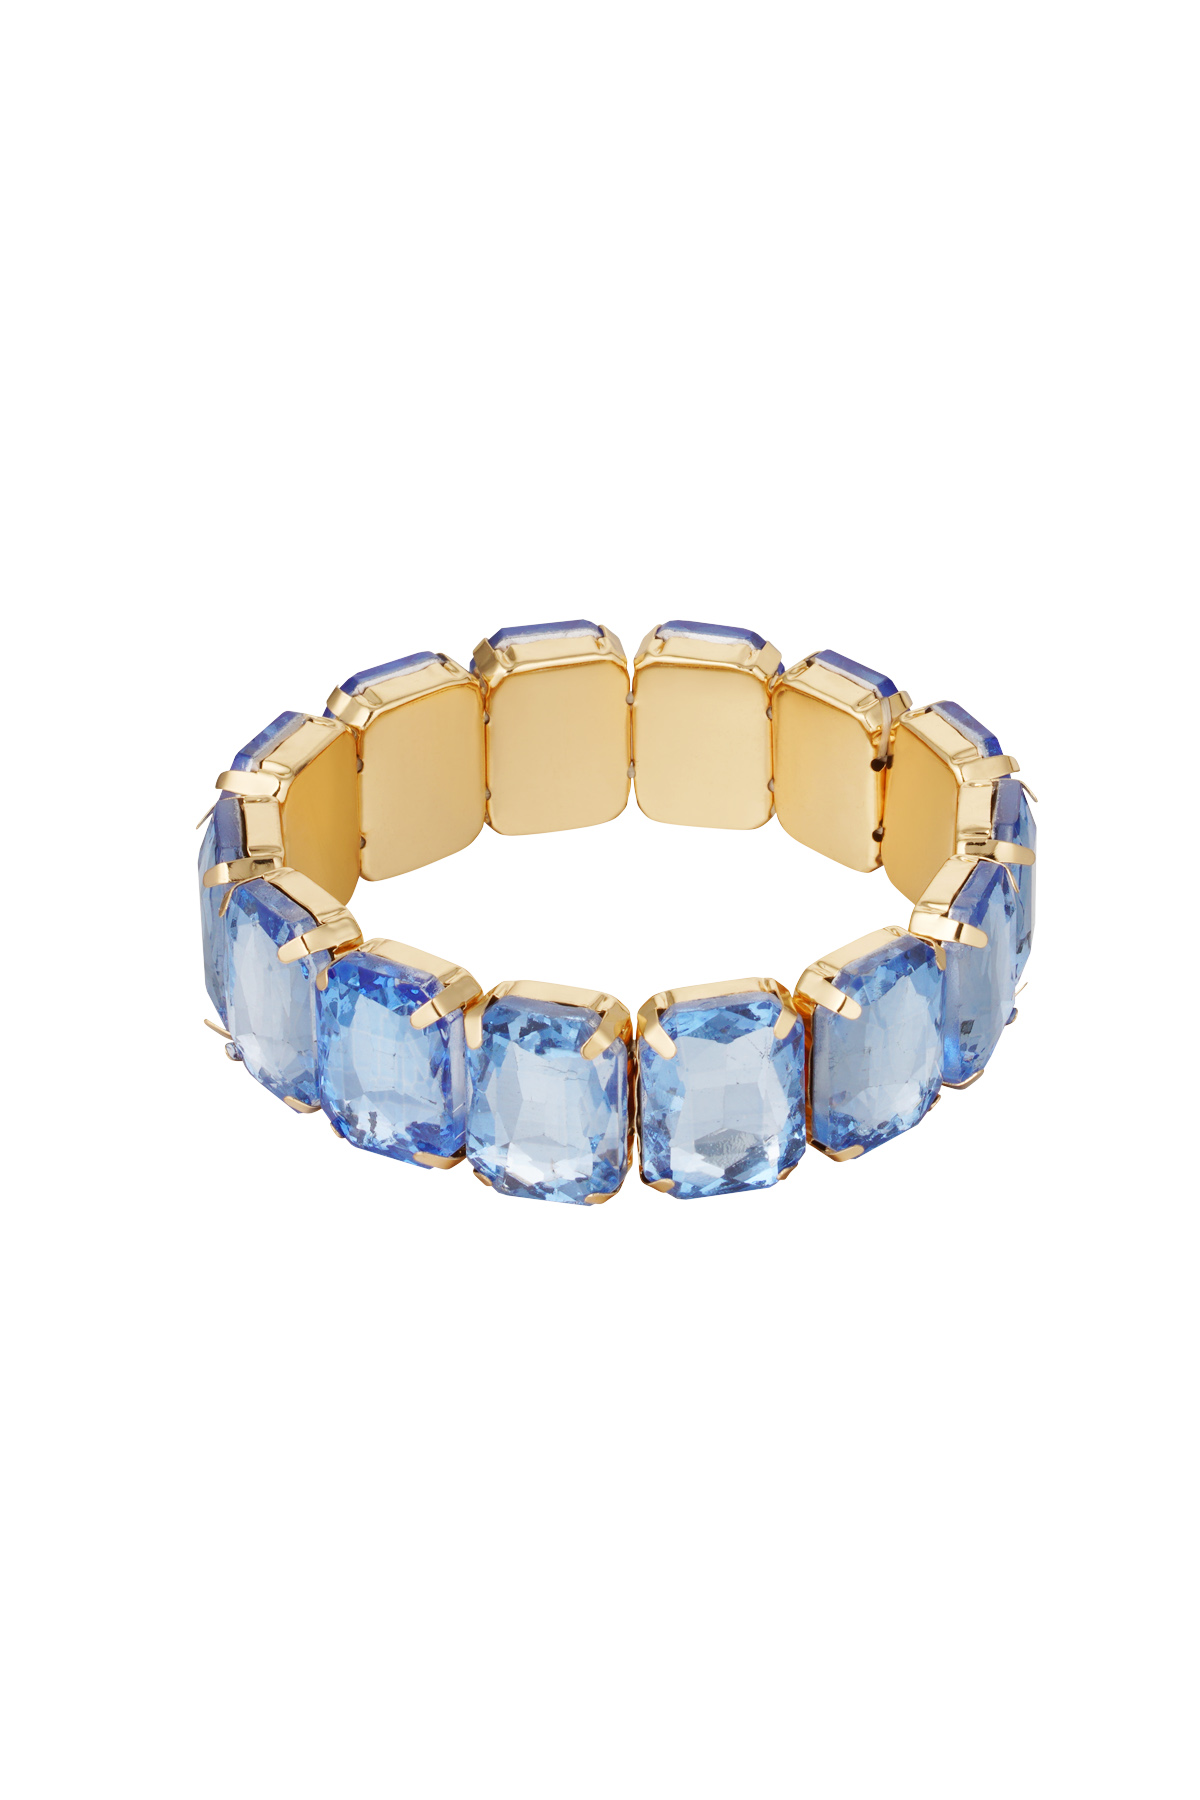 Slave bracelet large stones - gold/blue